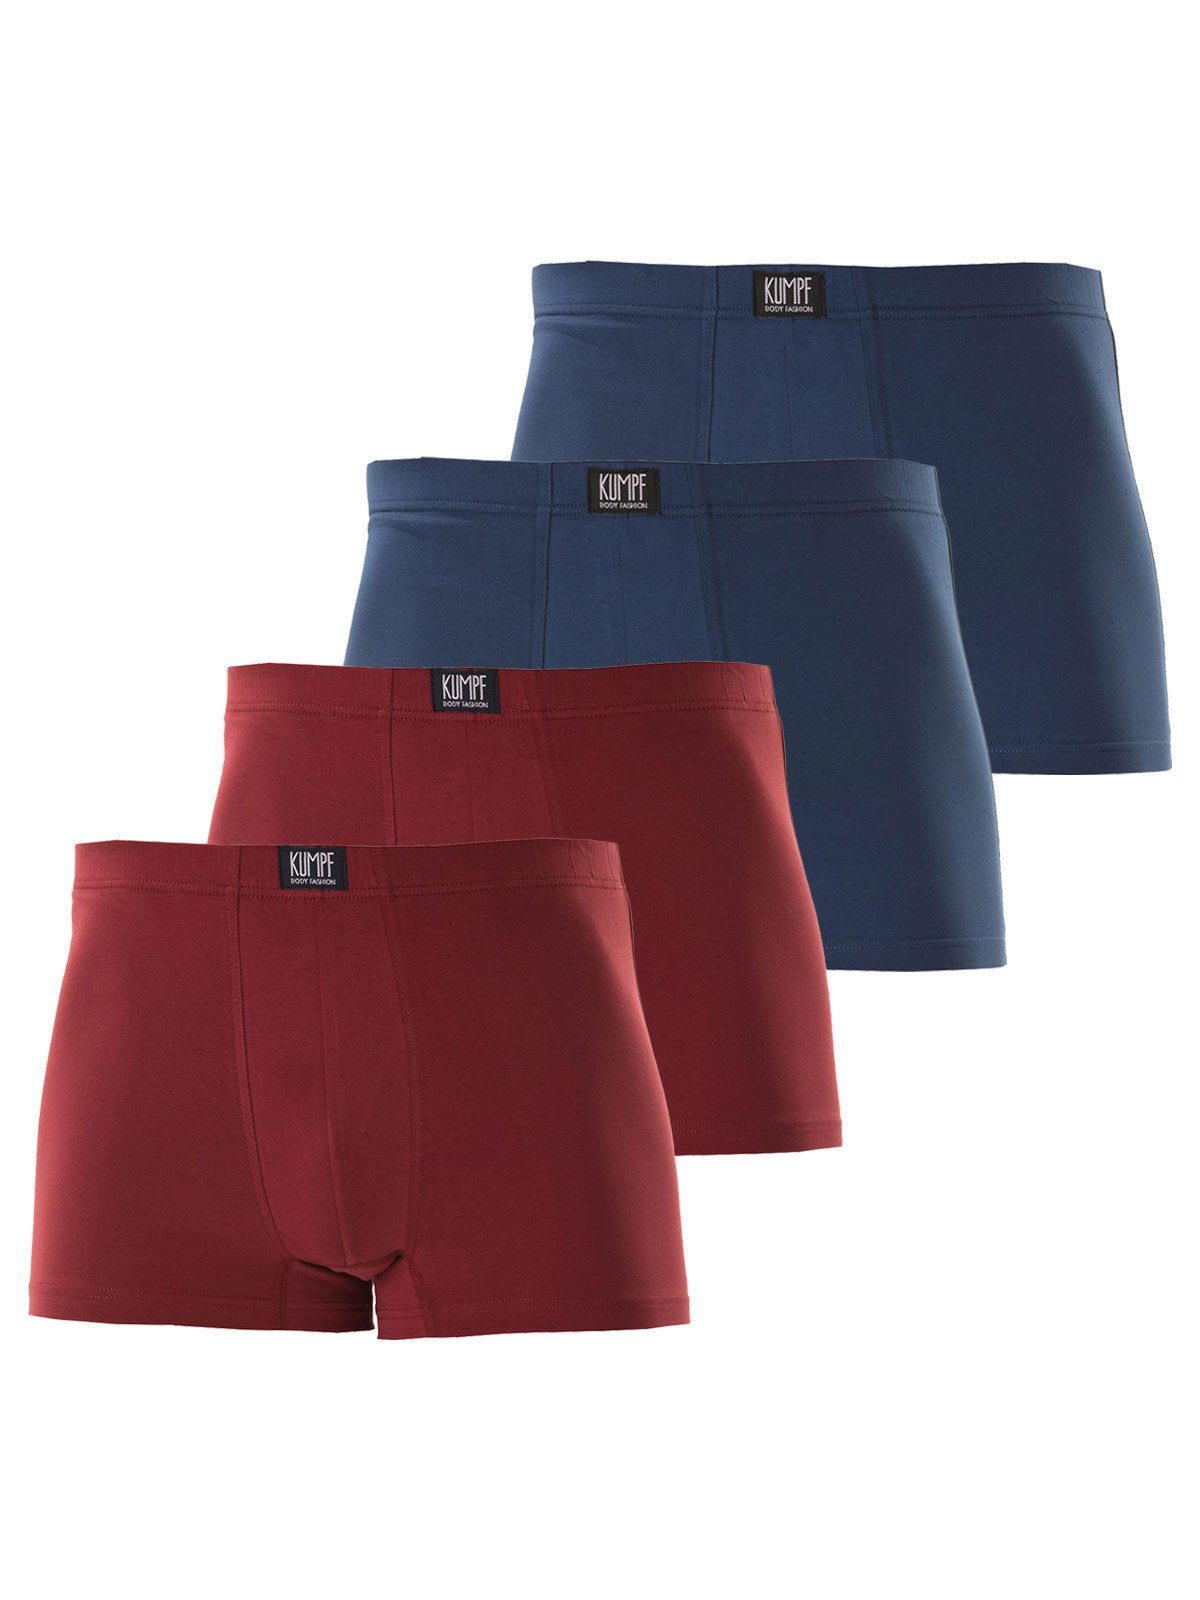 KUMPF Retro Pants 4er Sparpack Herren Pants Bio Cotton (Spar-Set, 4-St) hohe Markenqualität darkblue weinrot | Unterhosen